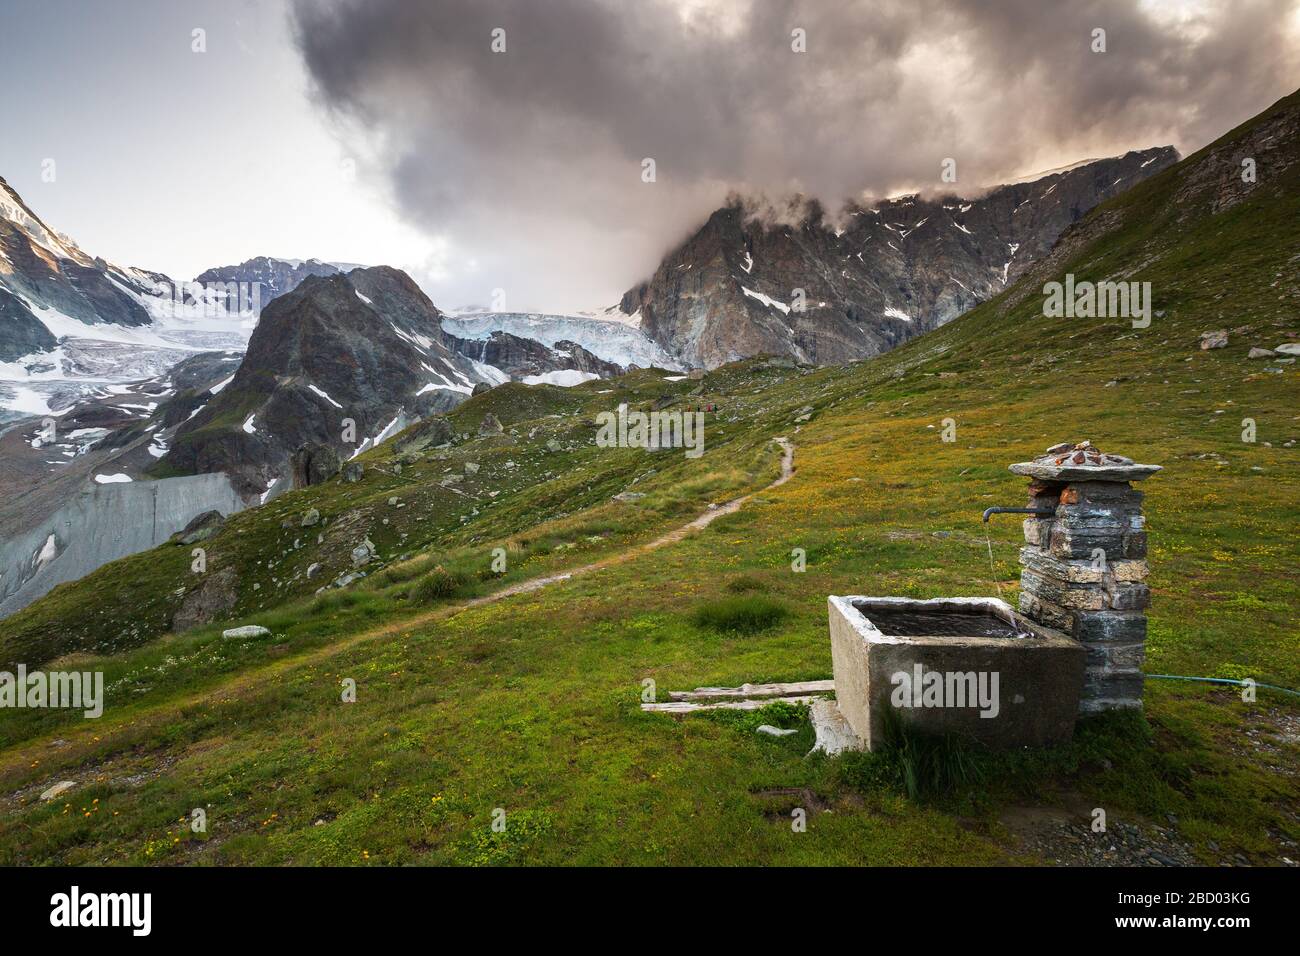 Paysage alpin avec fontaine en pierre. Vue sur le glacier Stockji. Vallée de Zmutt. Zermatt, Valais, Alpes suisses. Suisse. Banque D'Images